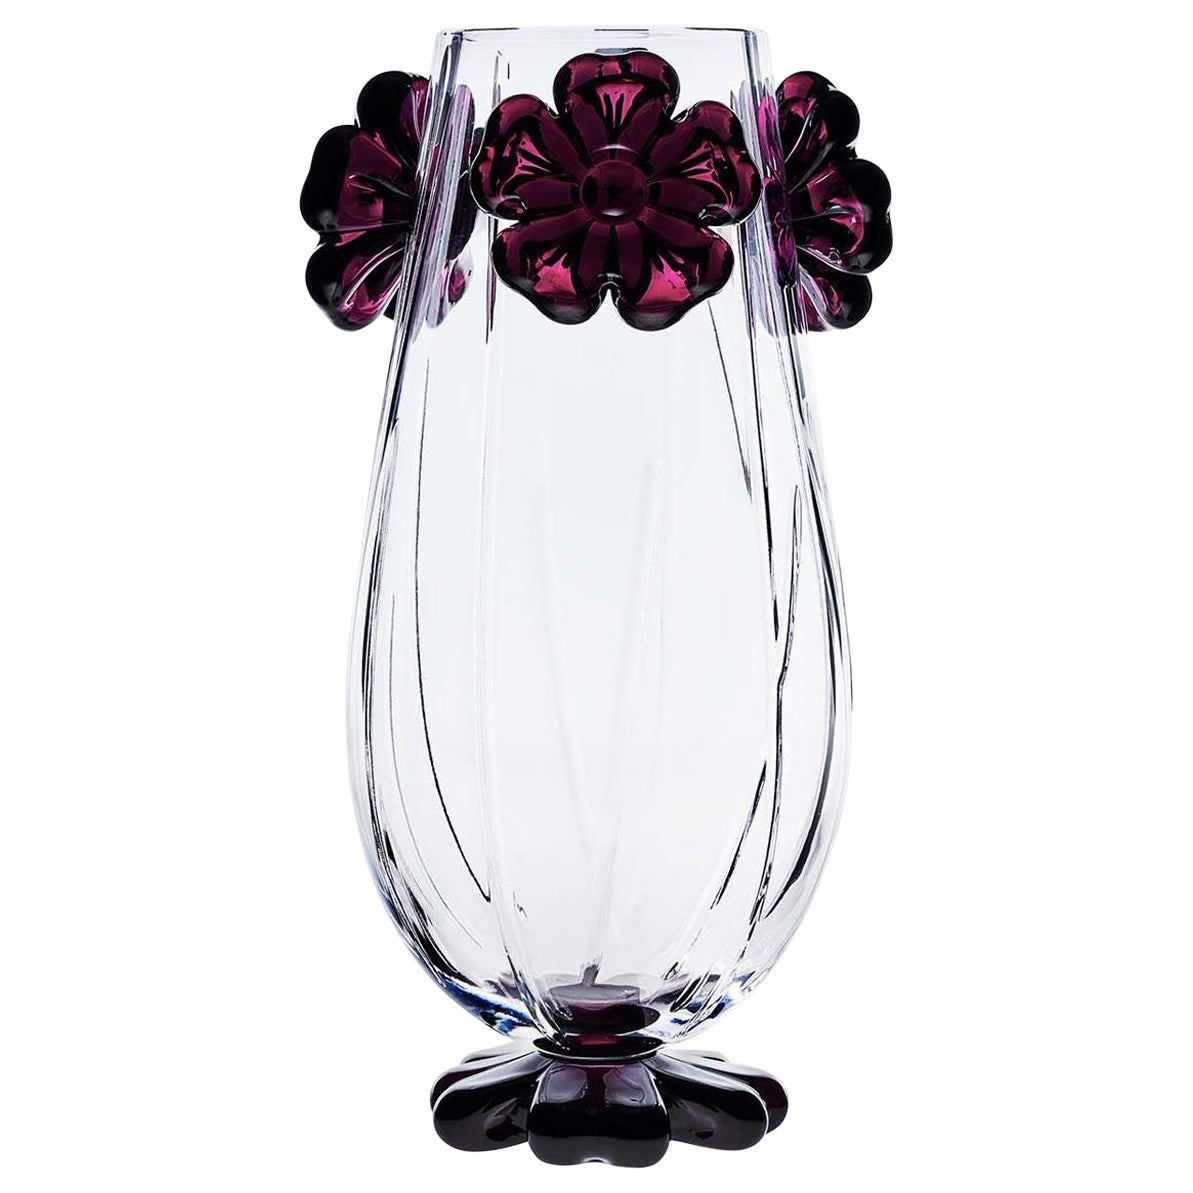 Cistus Red Flower Vase by Mario Cioni